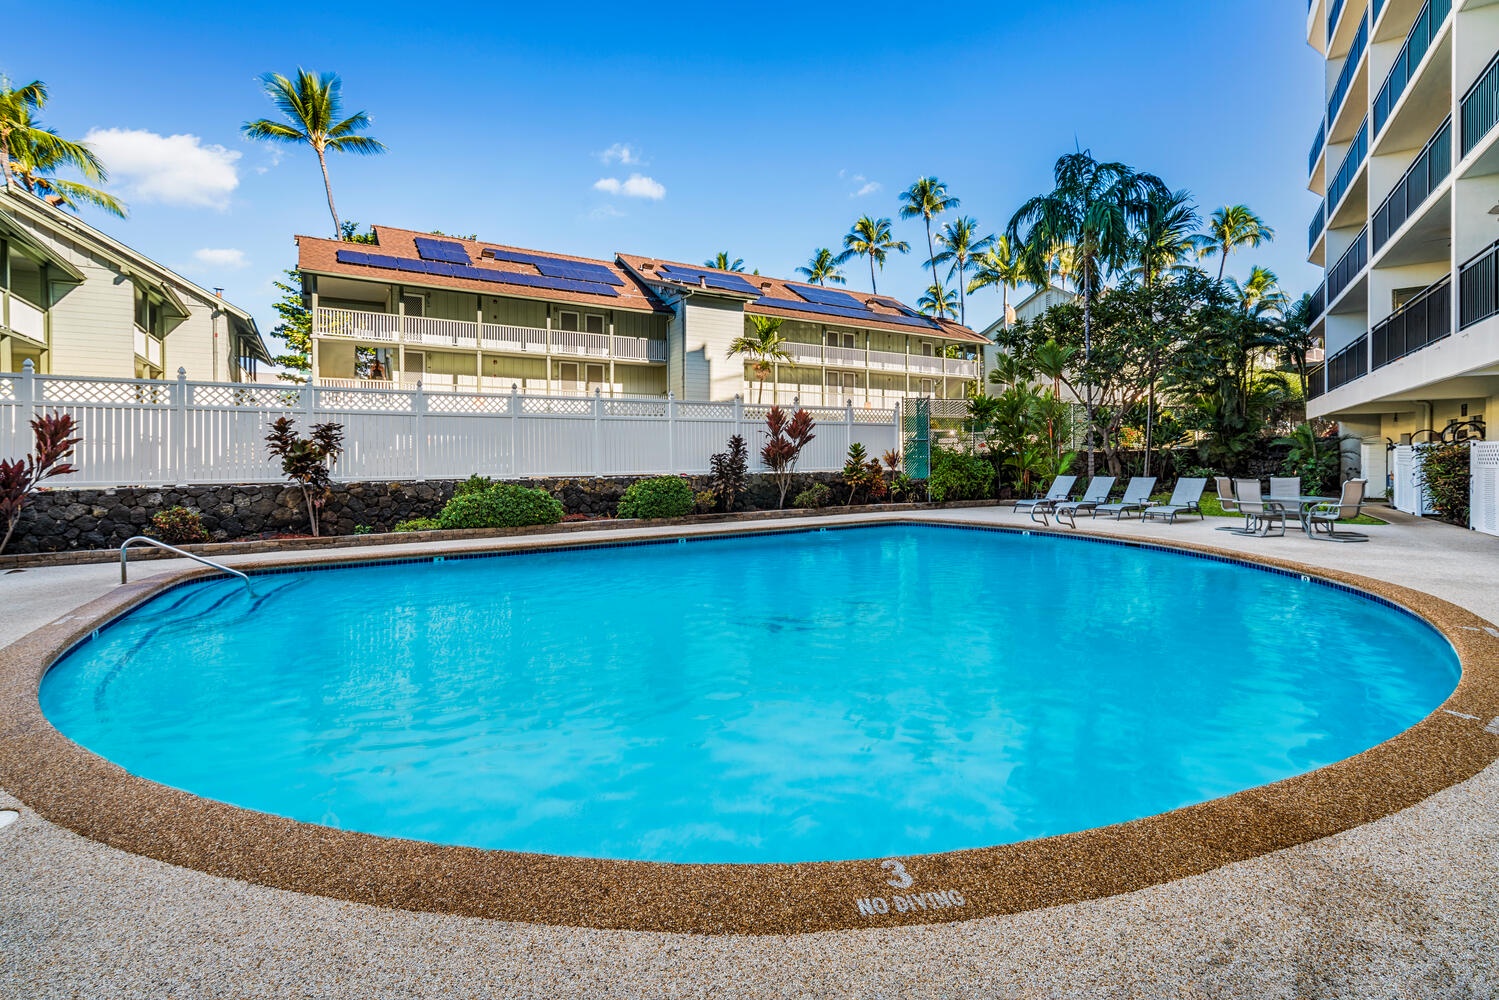 Kailua Kona Vacation Rentals, Kona Alii 302 - Kona Alii's pool with poolside loungers.